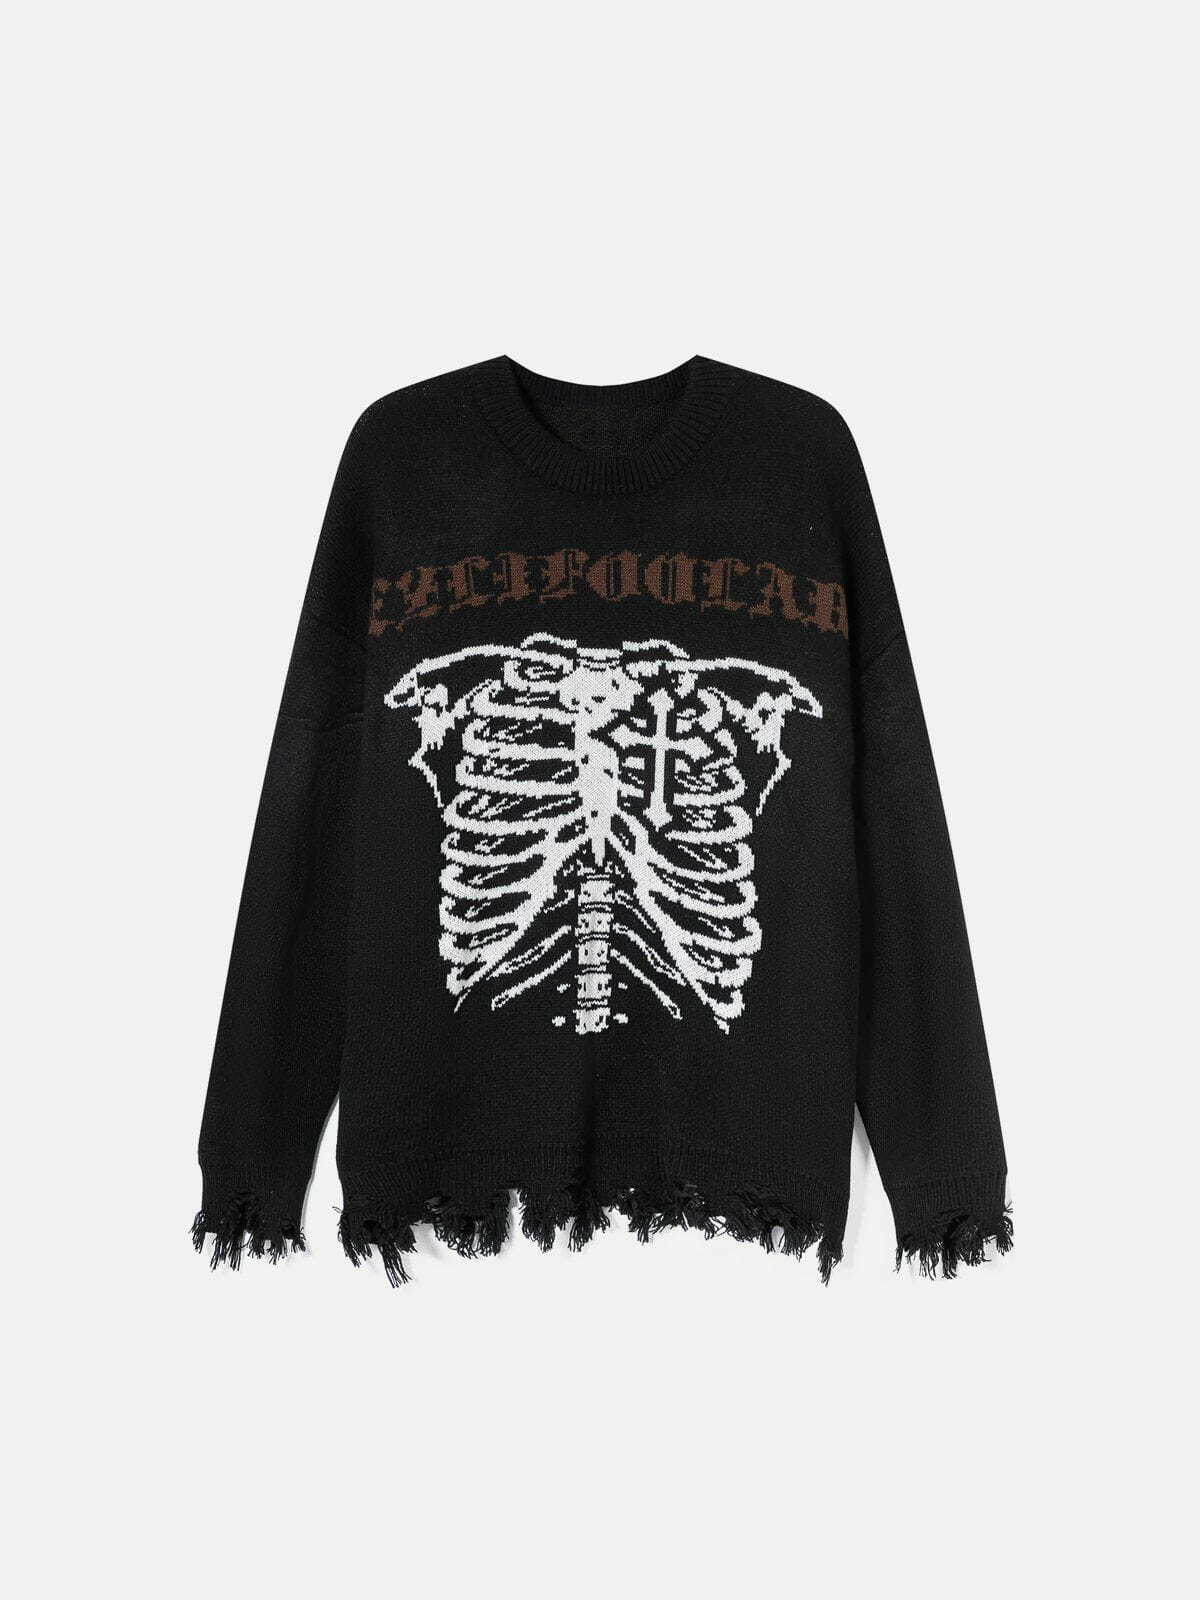 edgy skeleton breakage sweater retro streetwear 1577